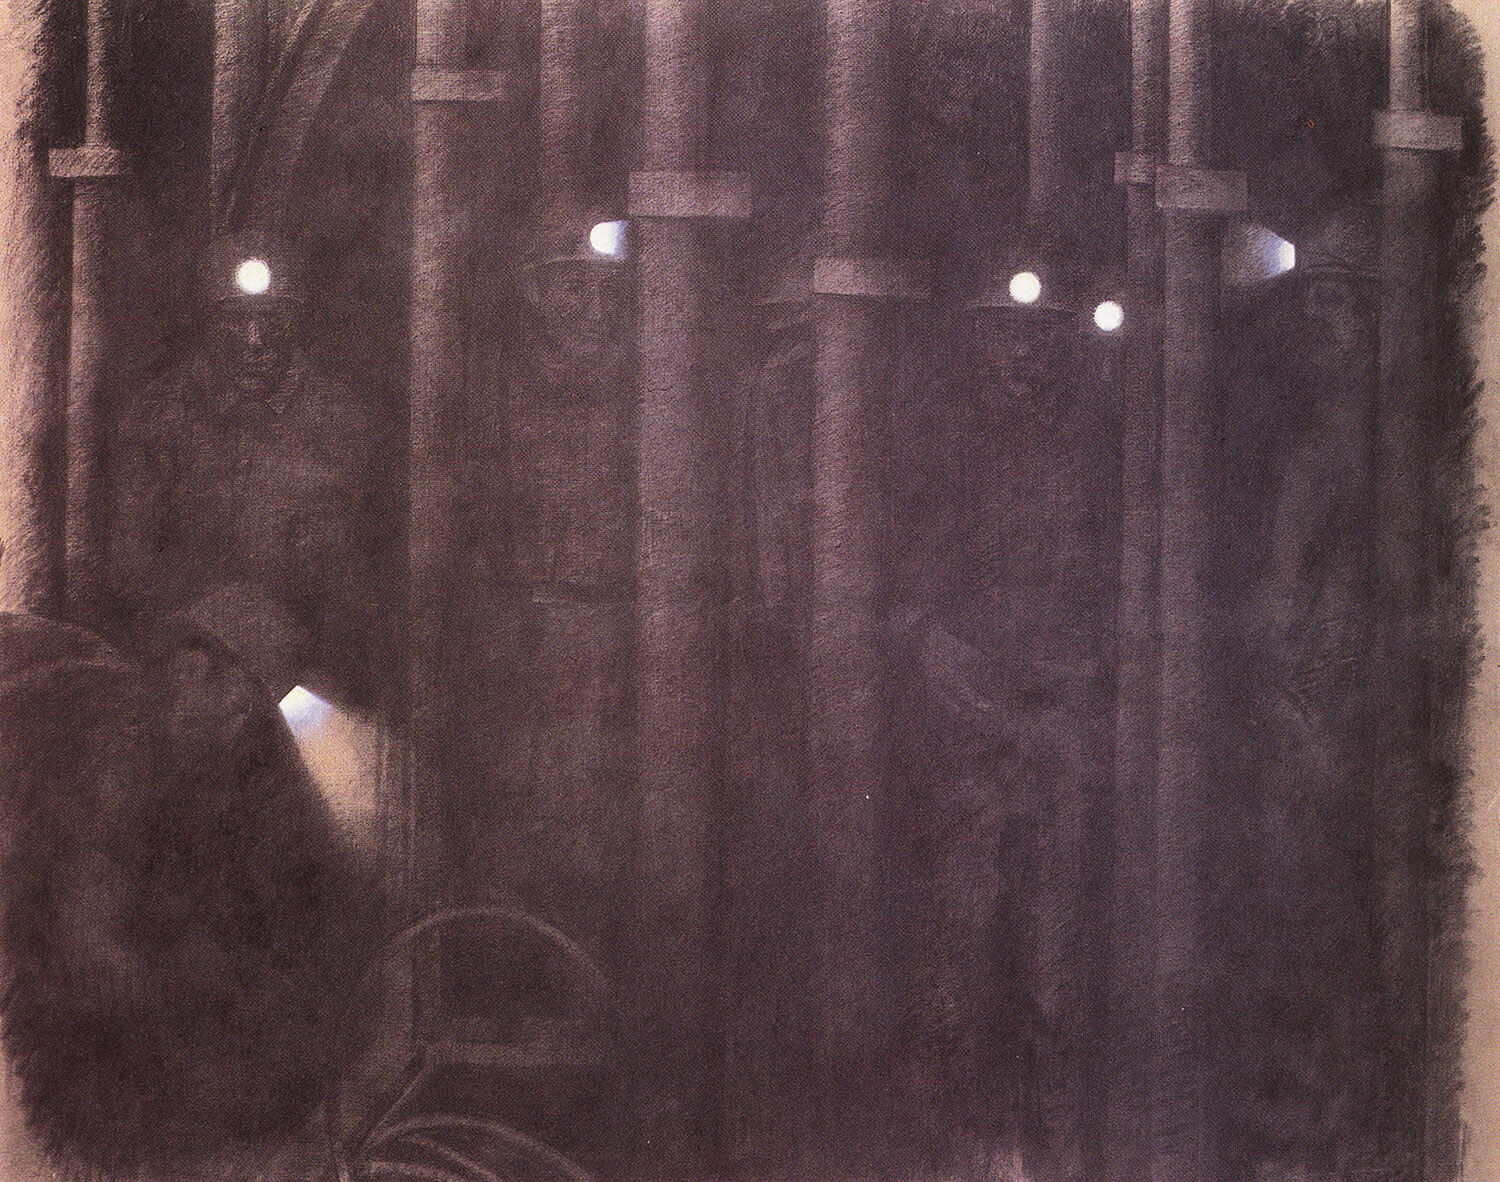 Jürgen Waller, Unter Tage 2, 1985, Kohle auf Leinwand, 200 x 250 cm